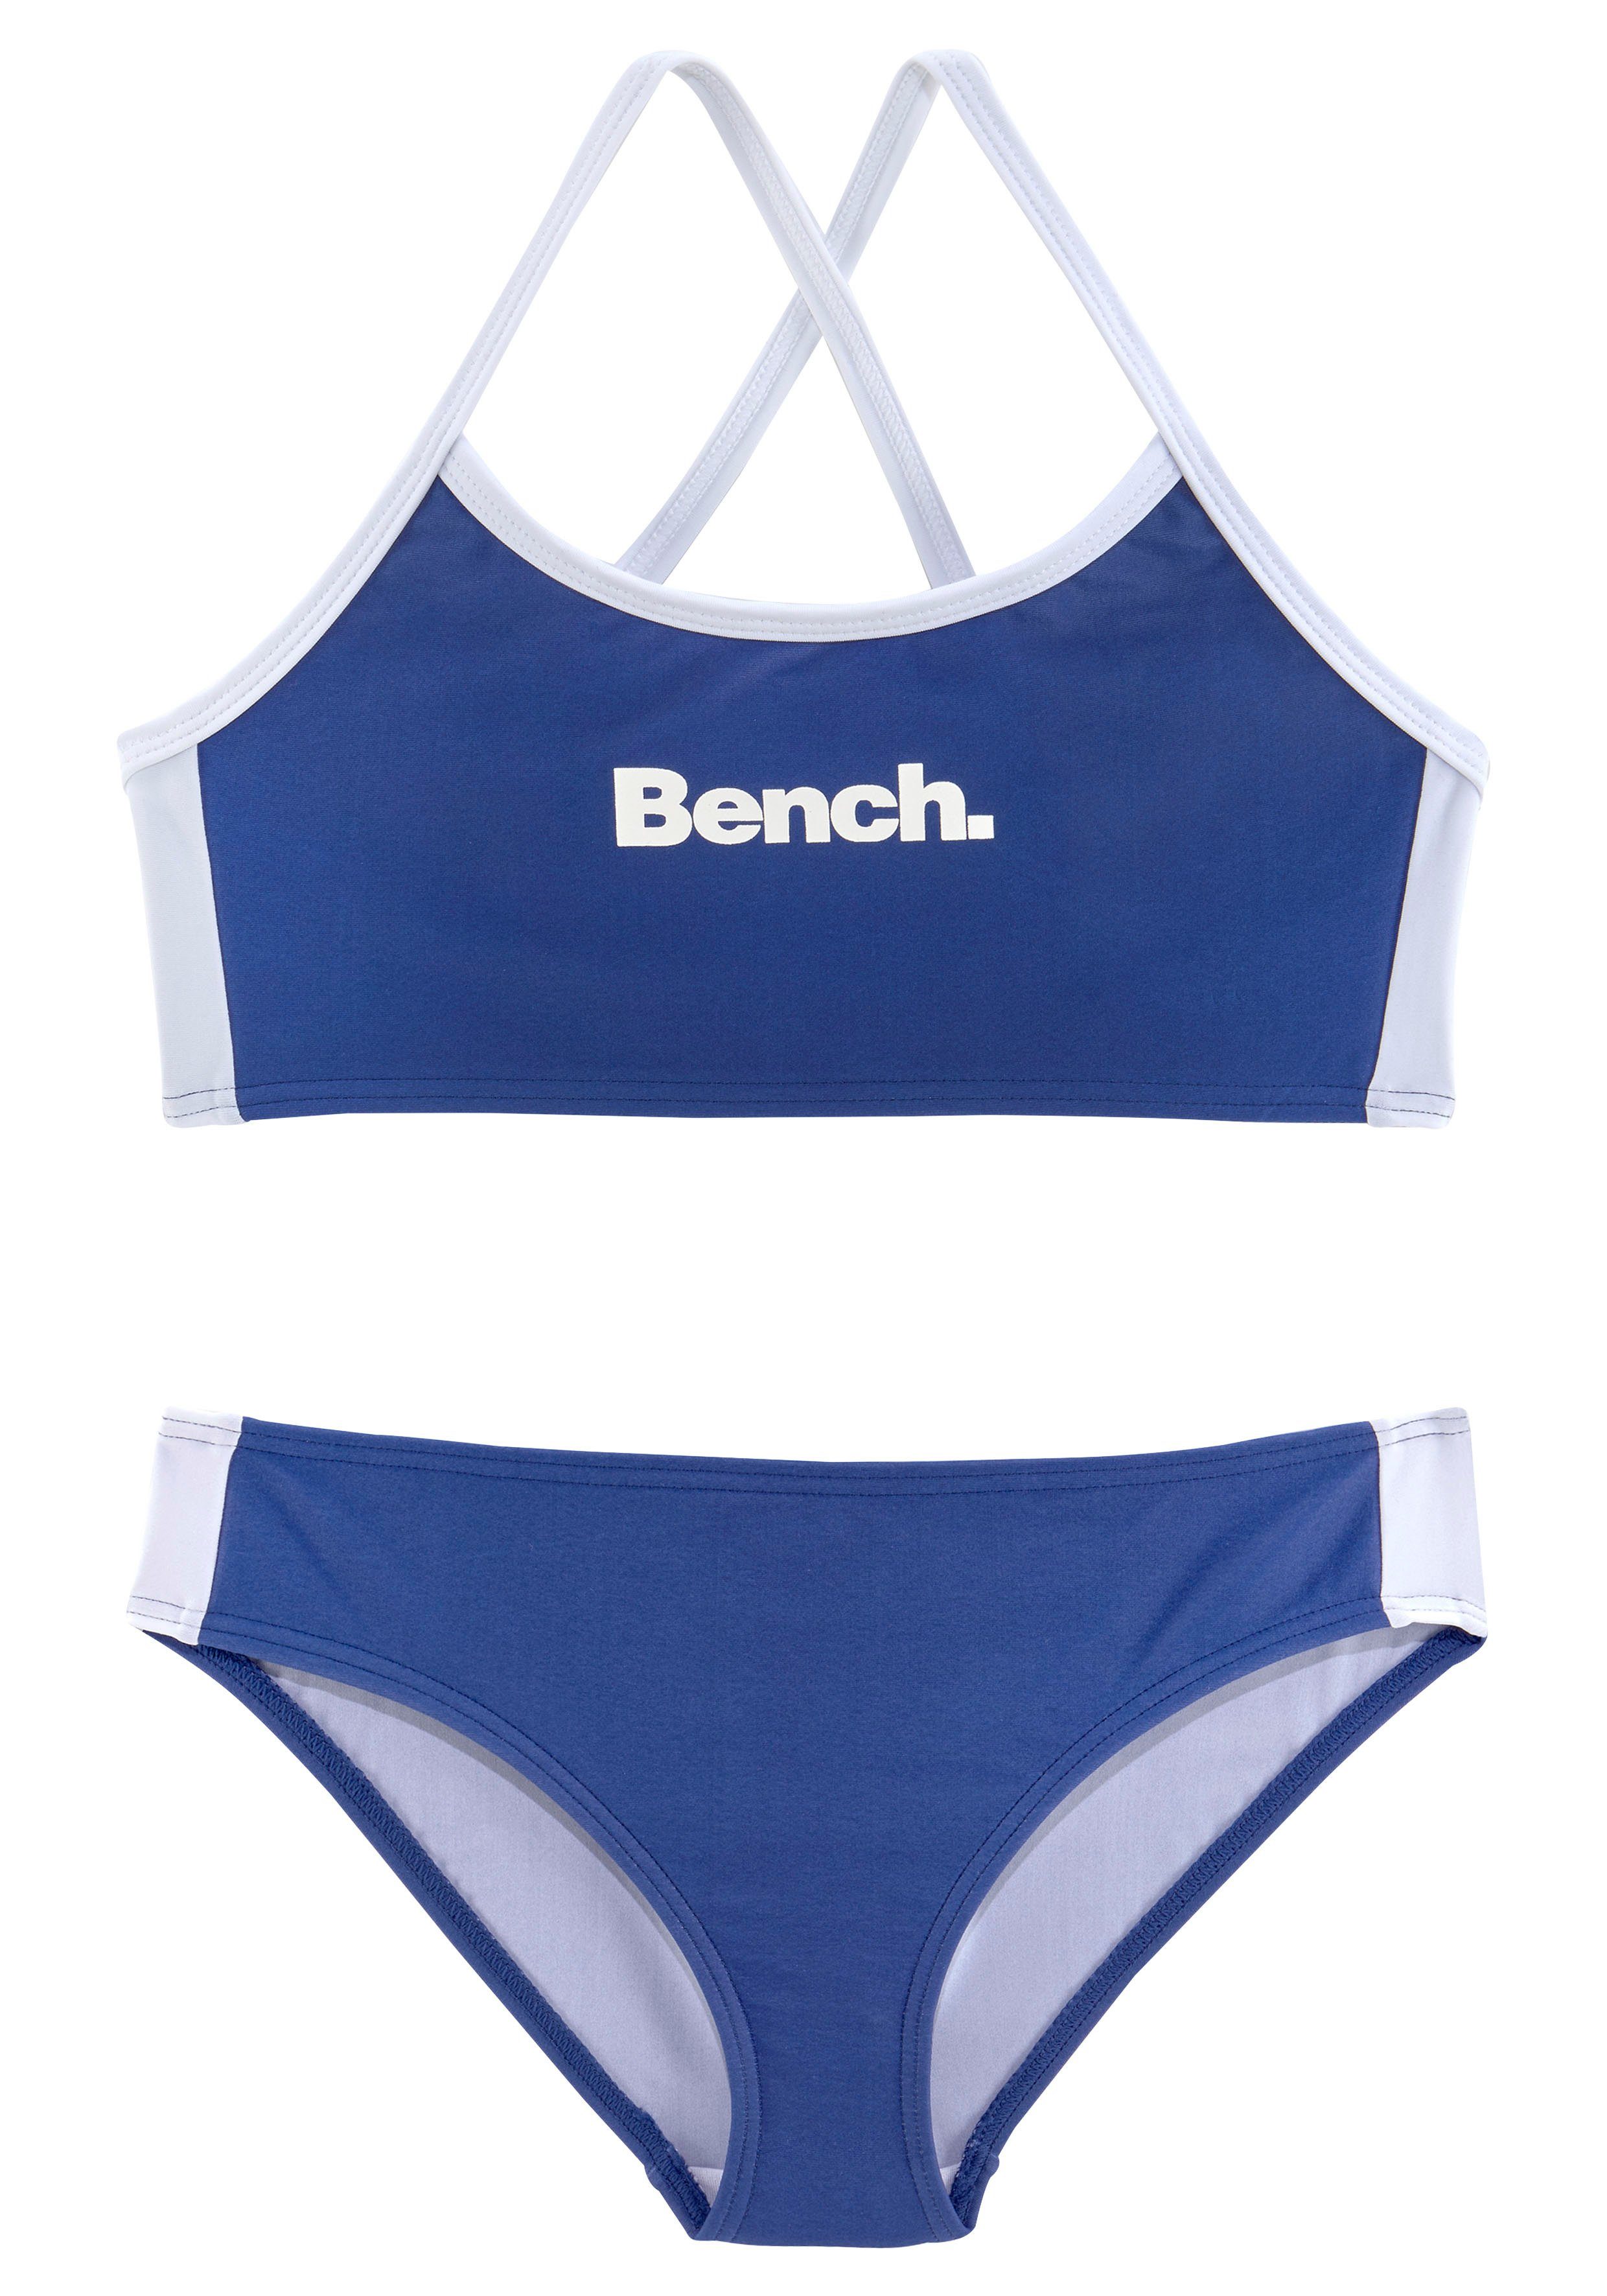 Bench. Bustier-Bikini mit gekreuzten blau-weiß Trägern